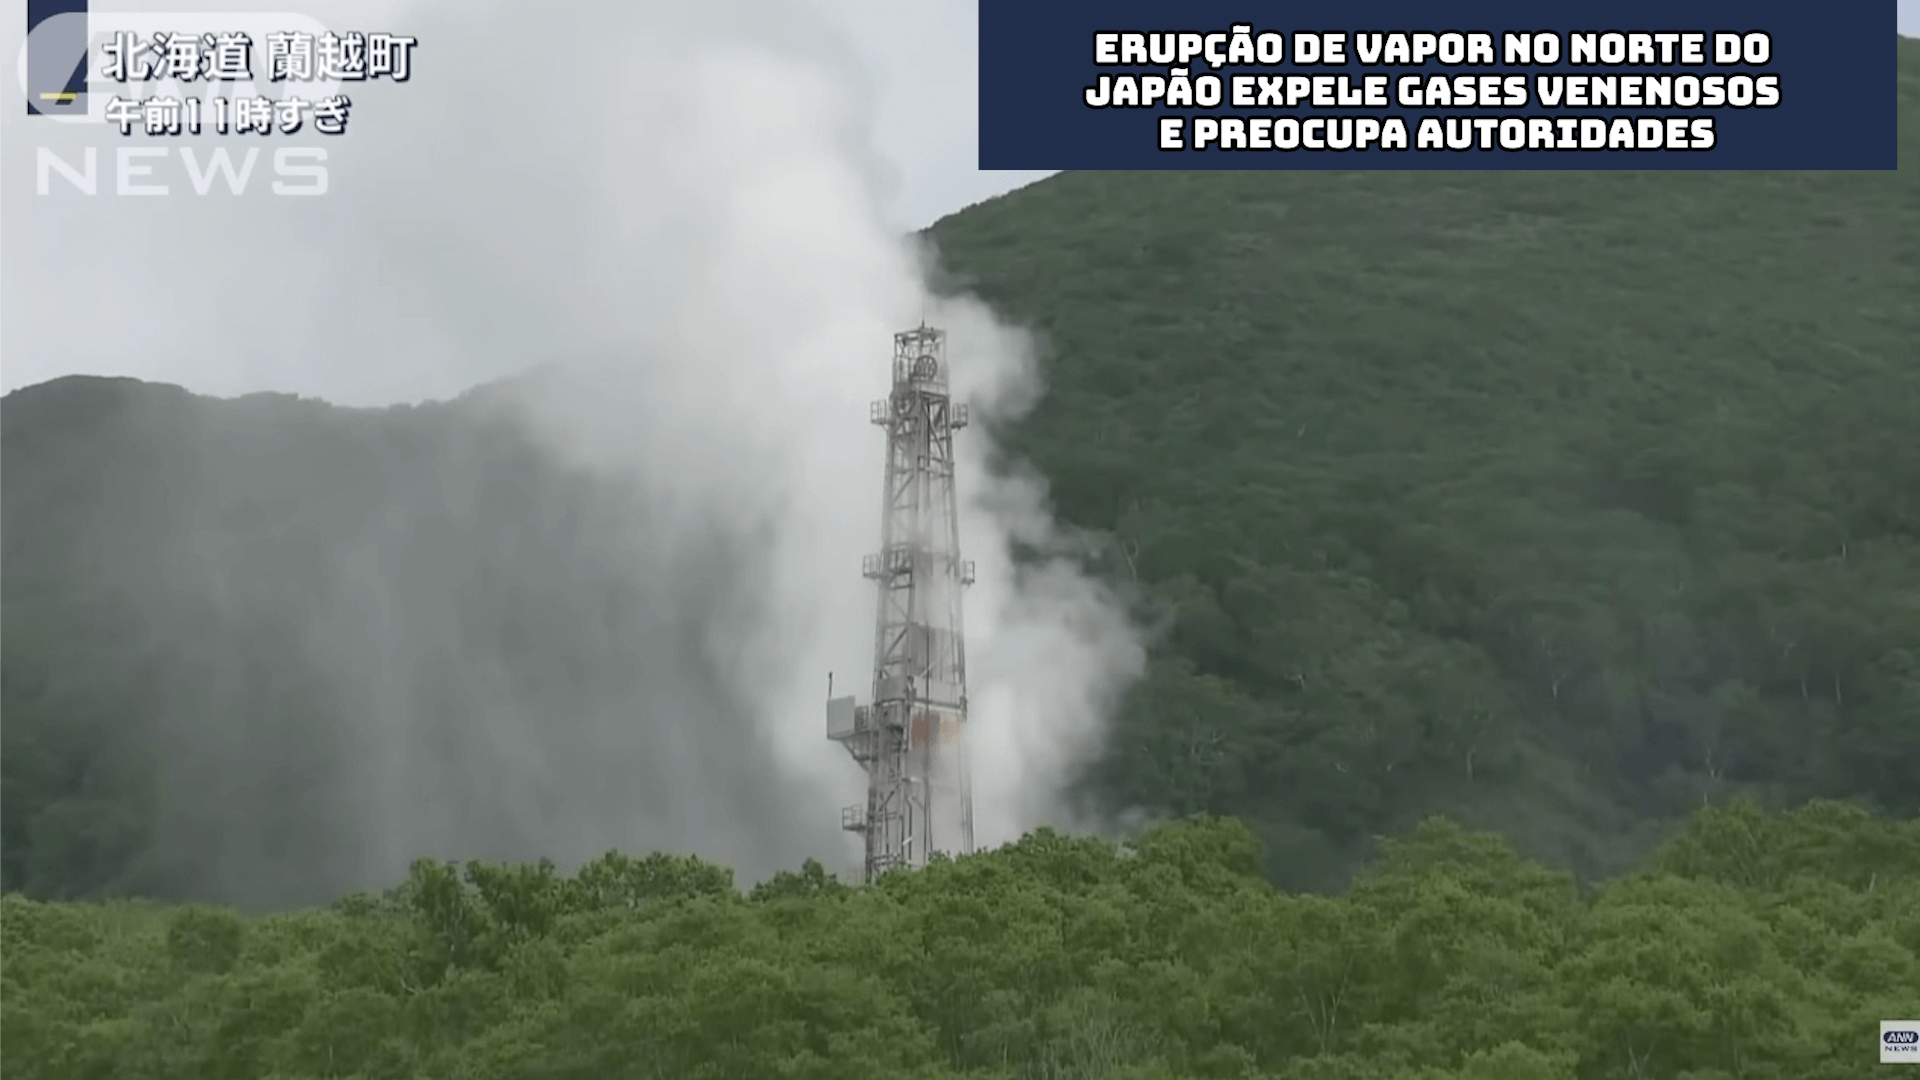 Erupção de vapor no norte do Japão expele gases venenosos e preocupa autoridades 